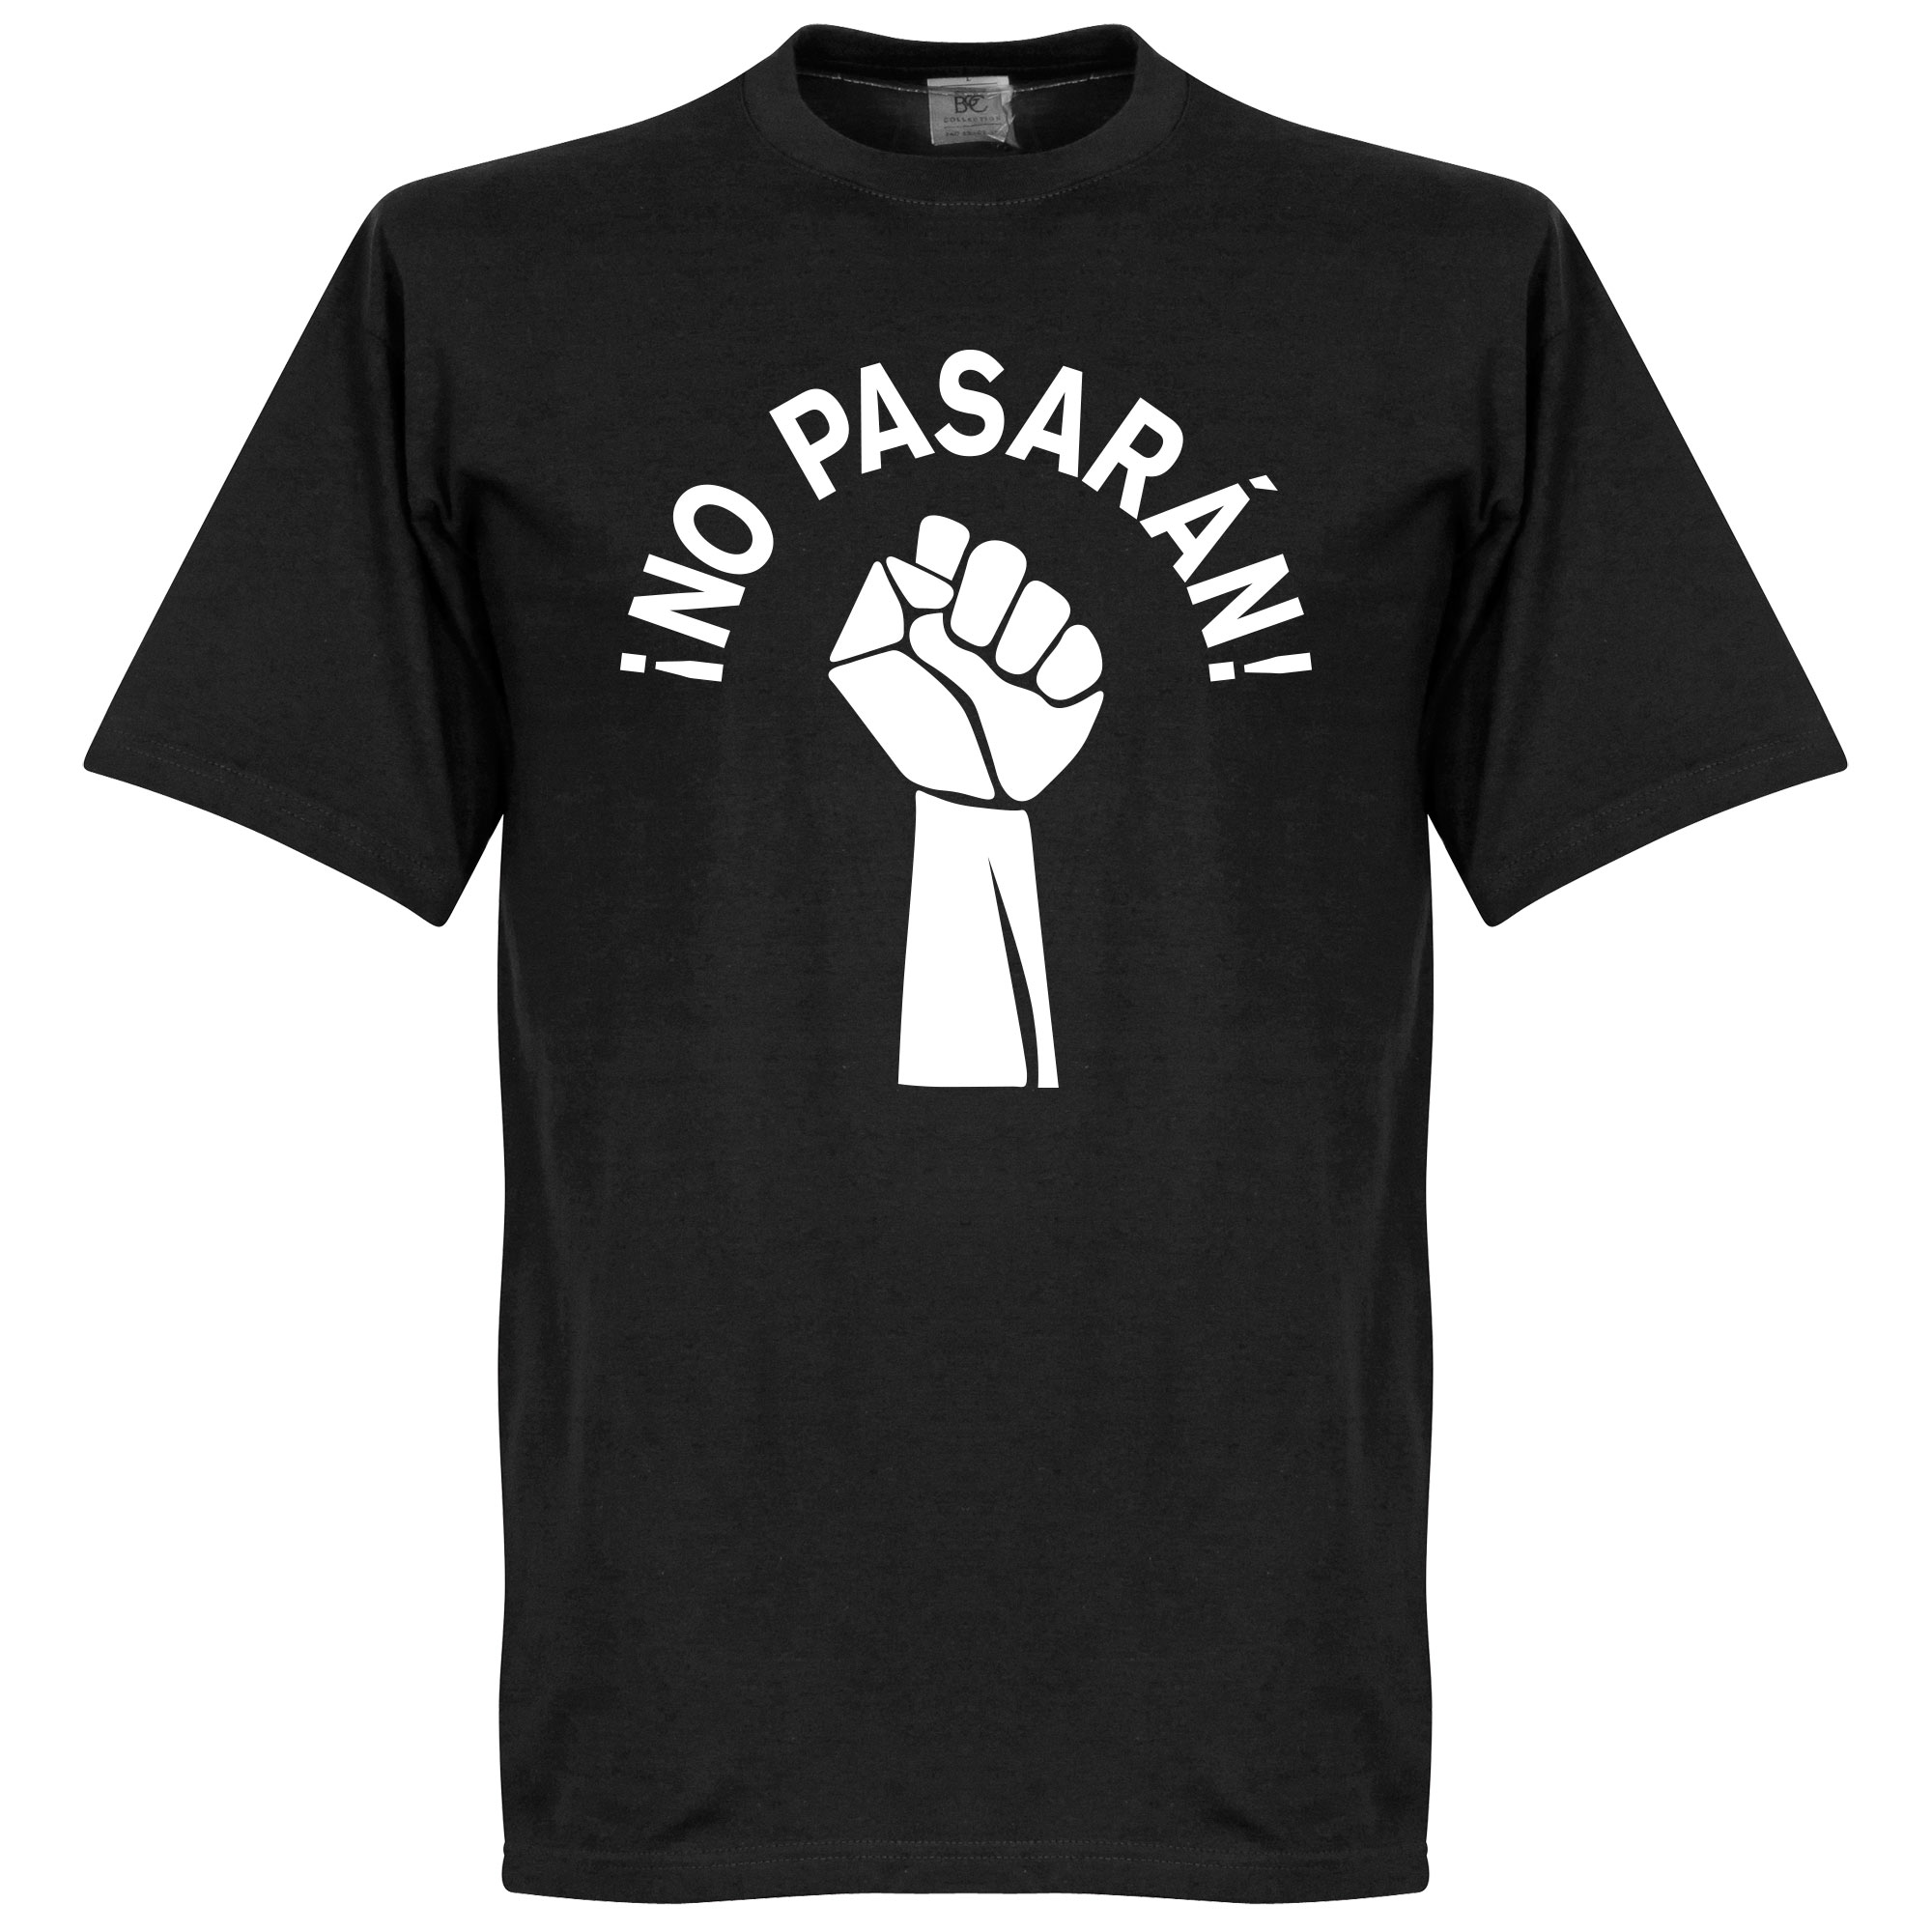 No Pasaran T-shirt S